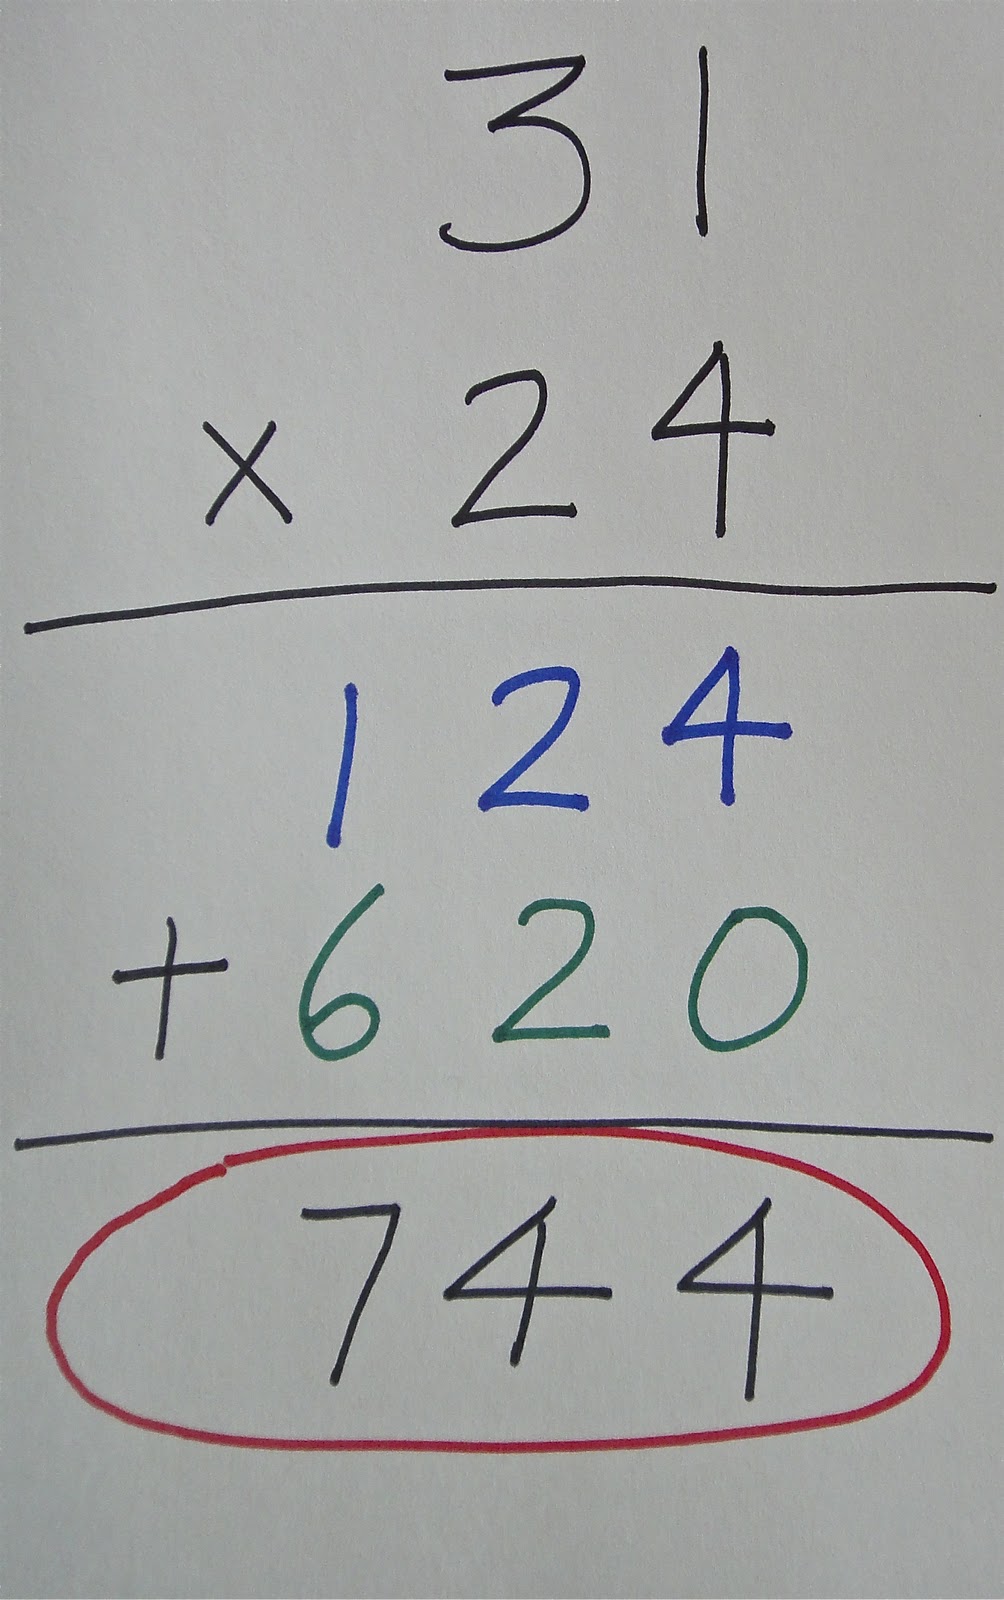 val-s-corner-multiplying-2-digit-numbers